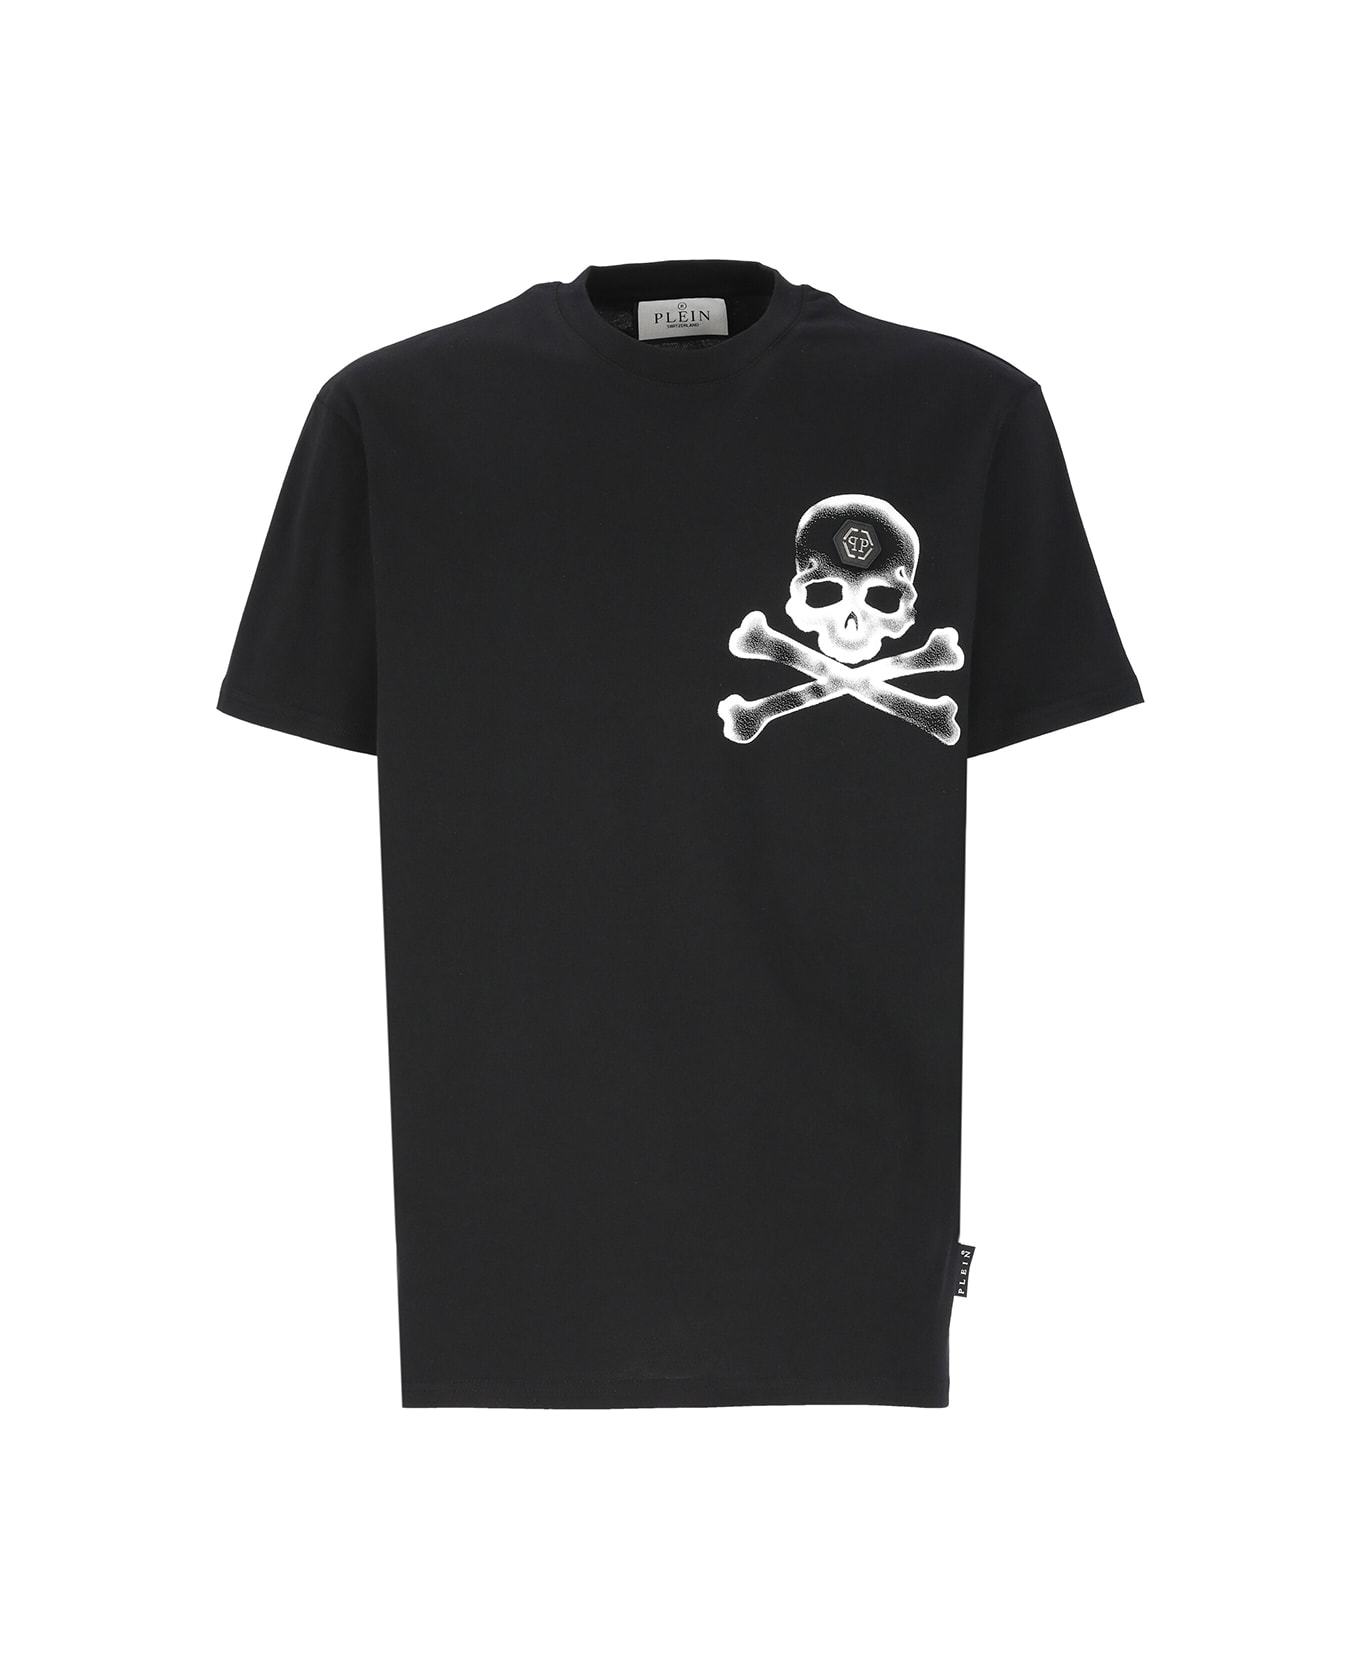 Philipp Plein Round Neck Ss Gothic Plein T-shirt - Nero シャツ